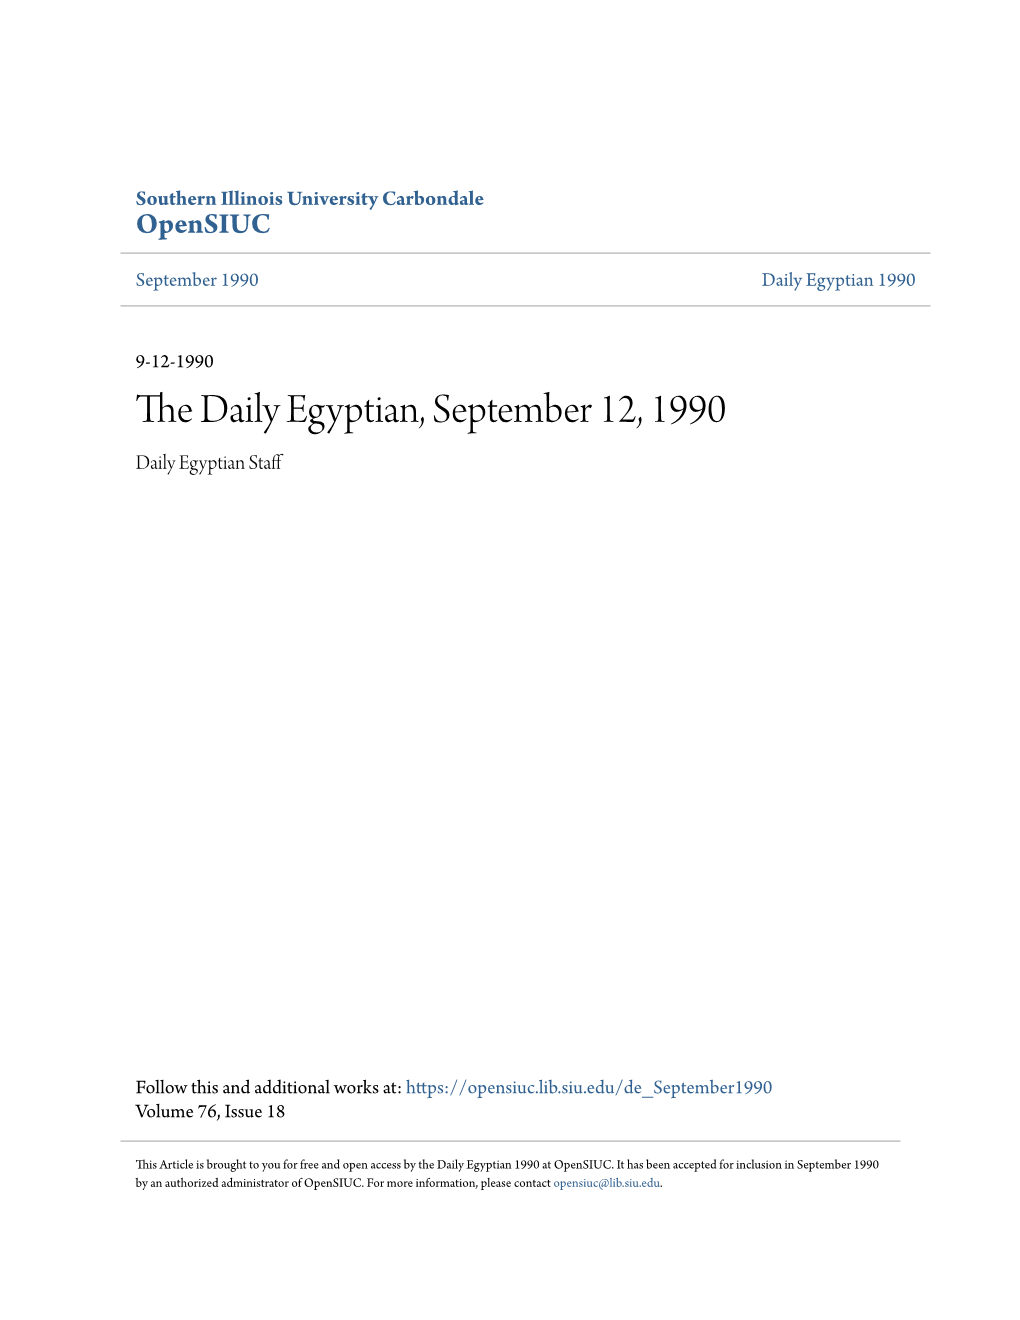 The Daily Egyptian, September 12, 1990